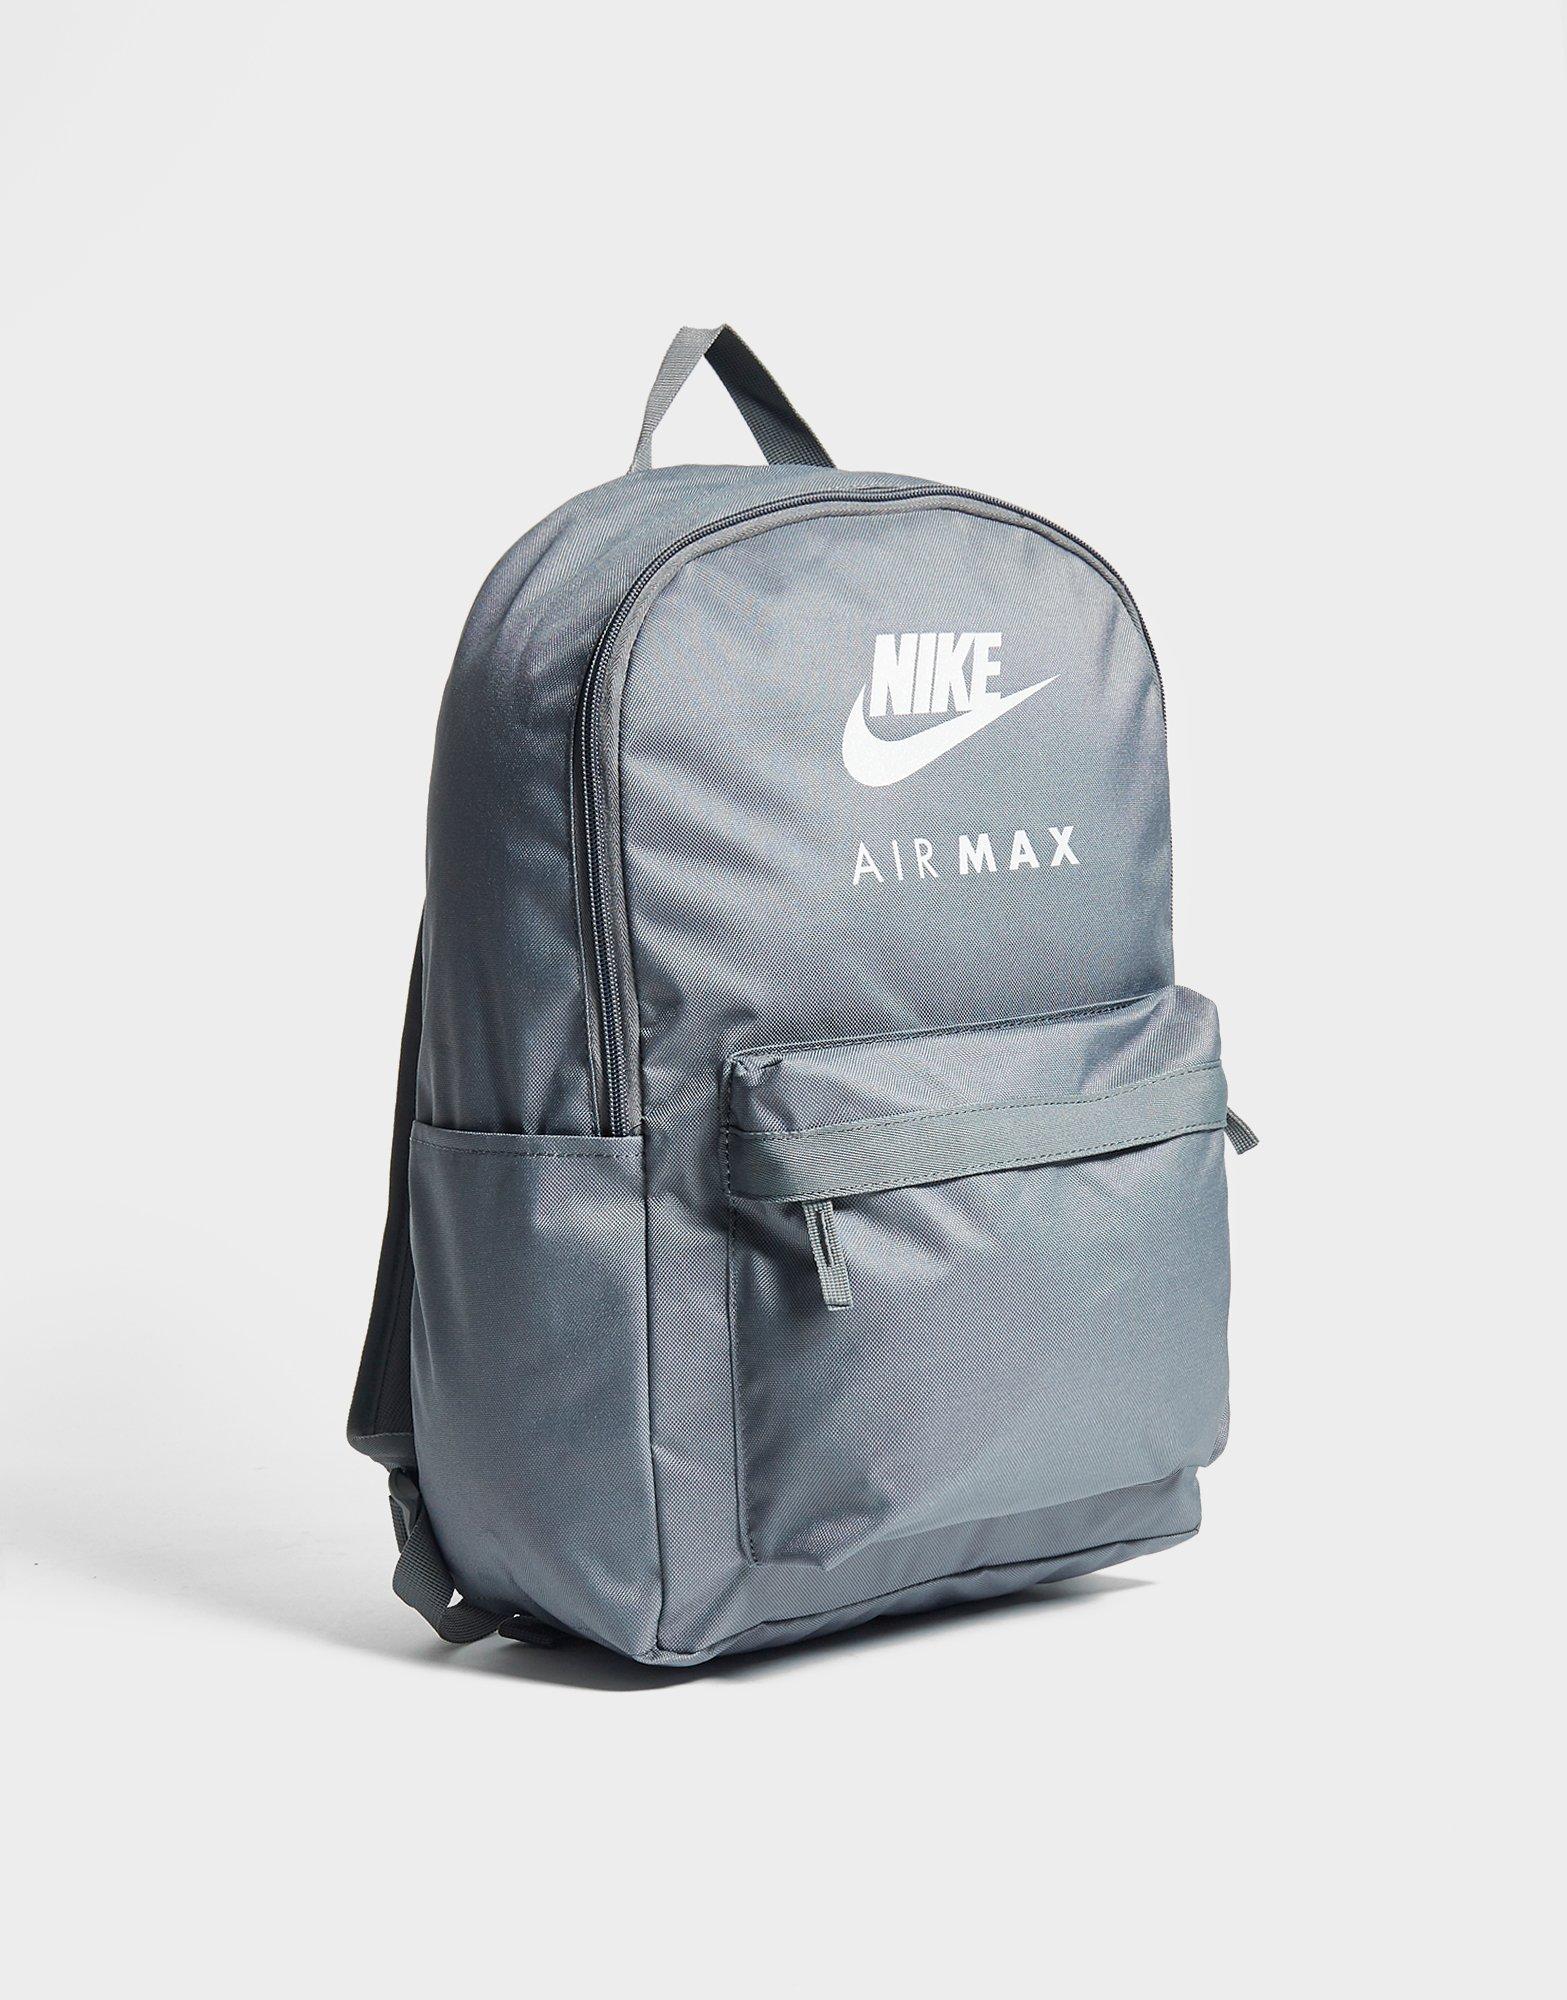 nike air max backpack green